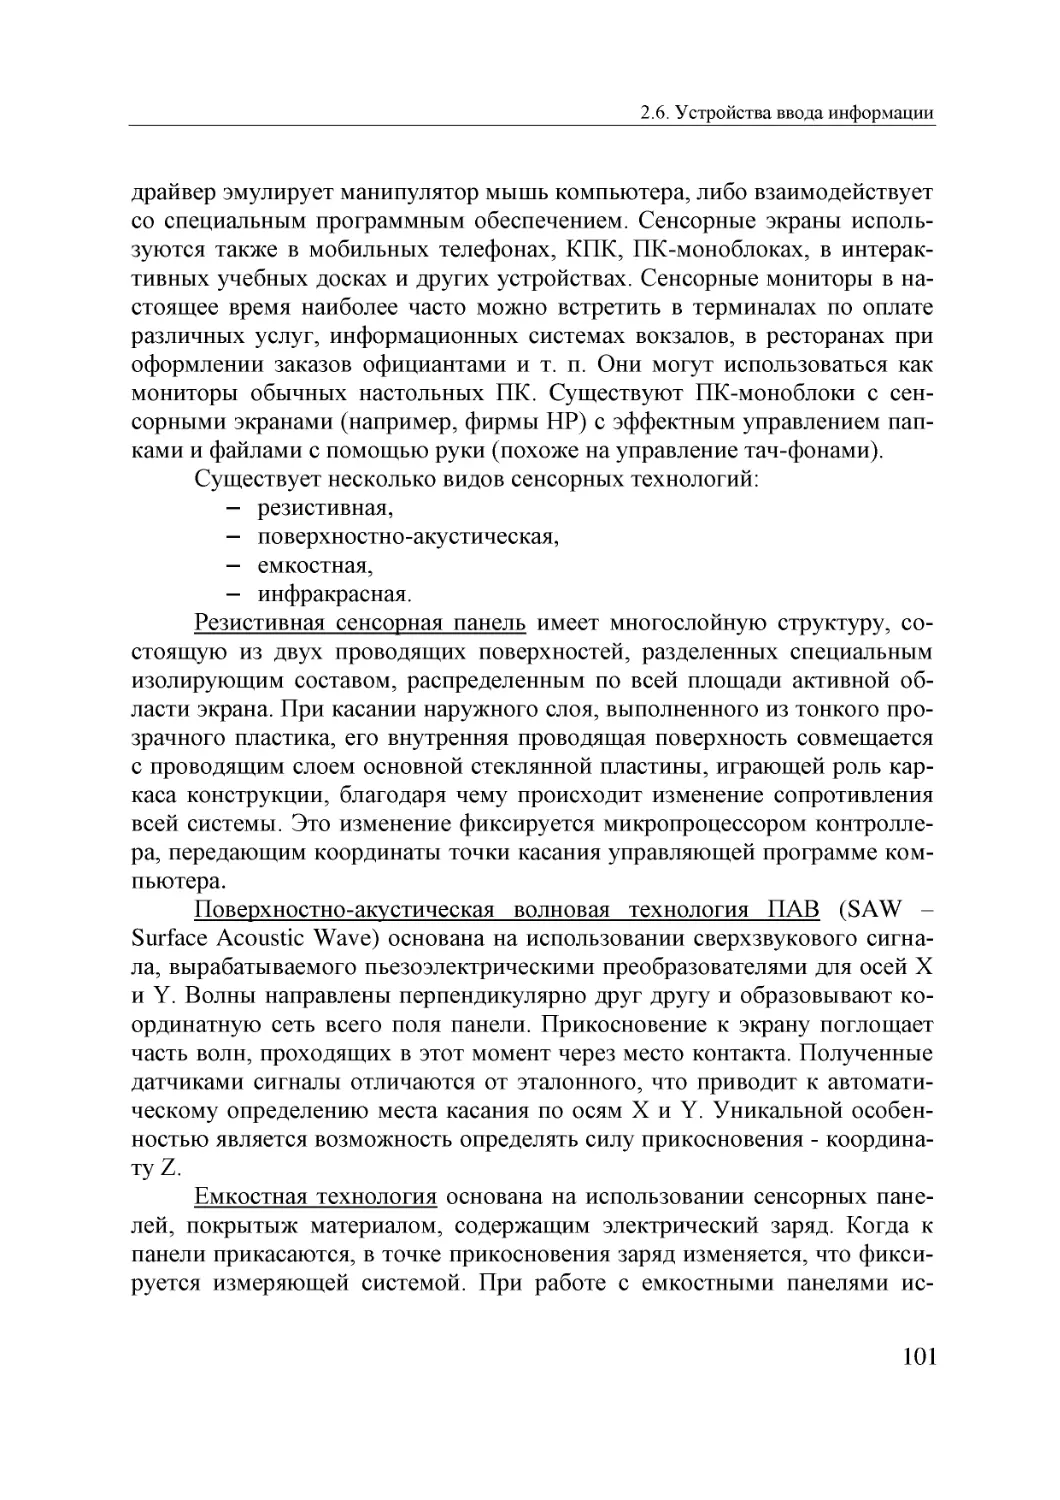 Informatika_Uchebnik_dlya_vuzov_2010 101